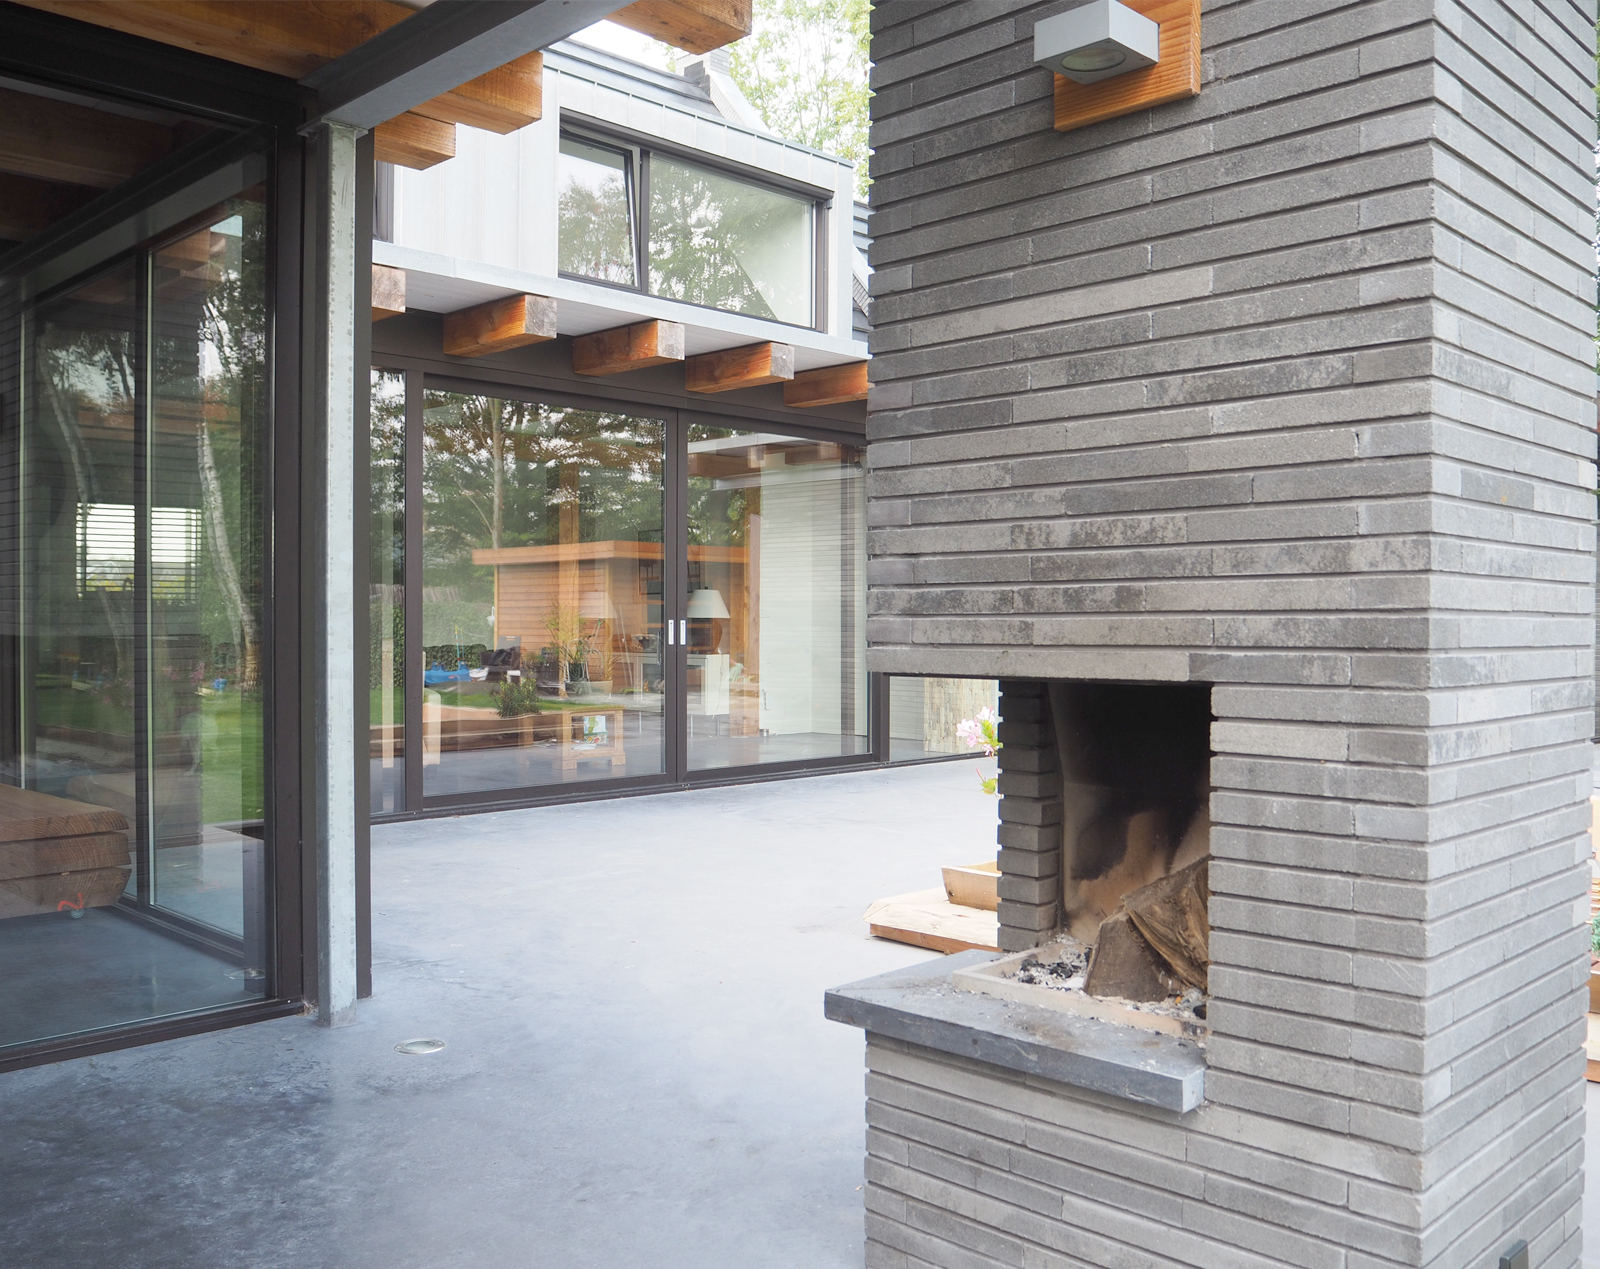 limmen_jeroendenijs_bni_architect_interior_achteraanzicht_fireplace